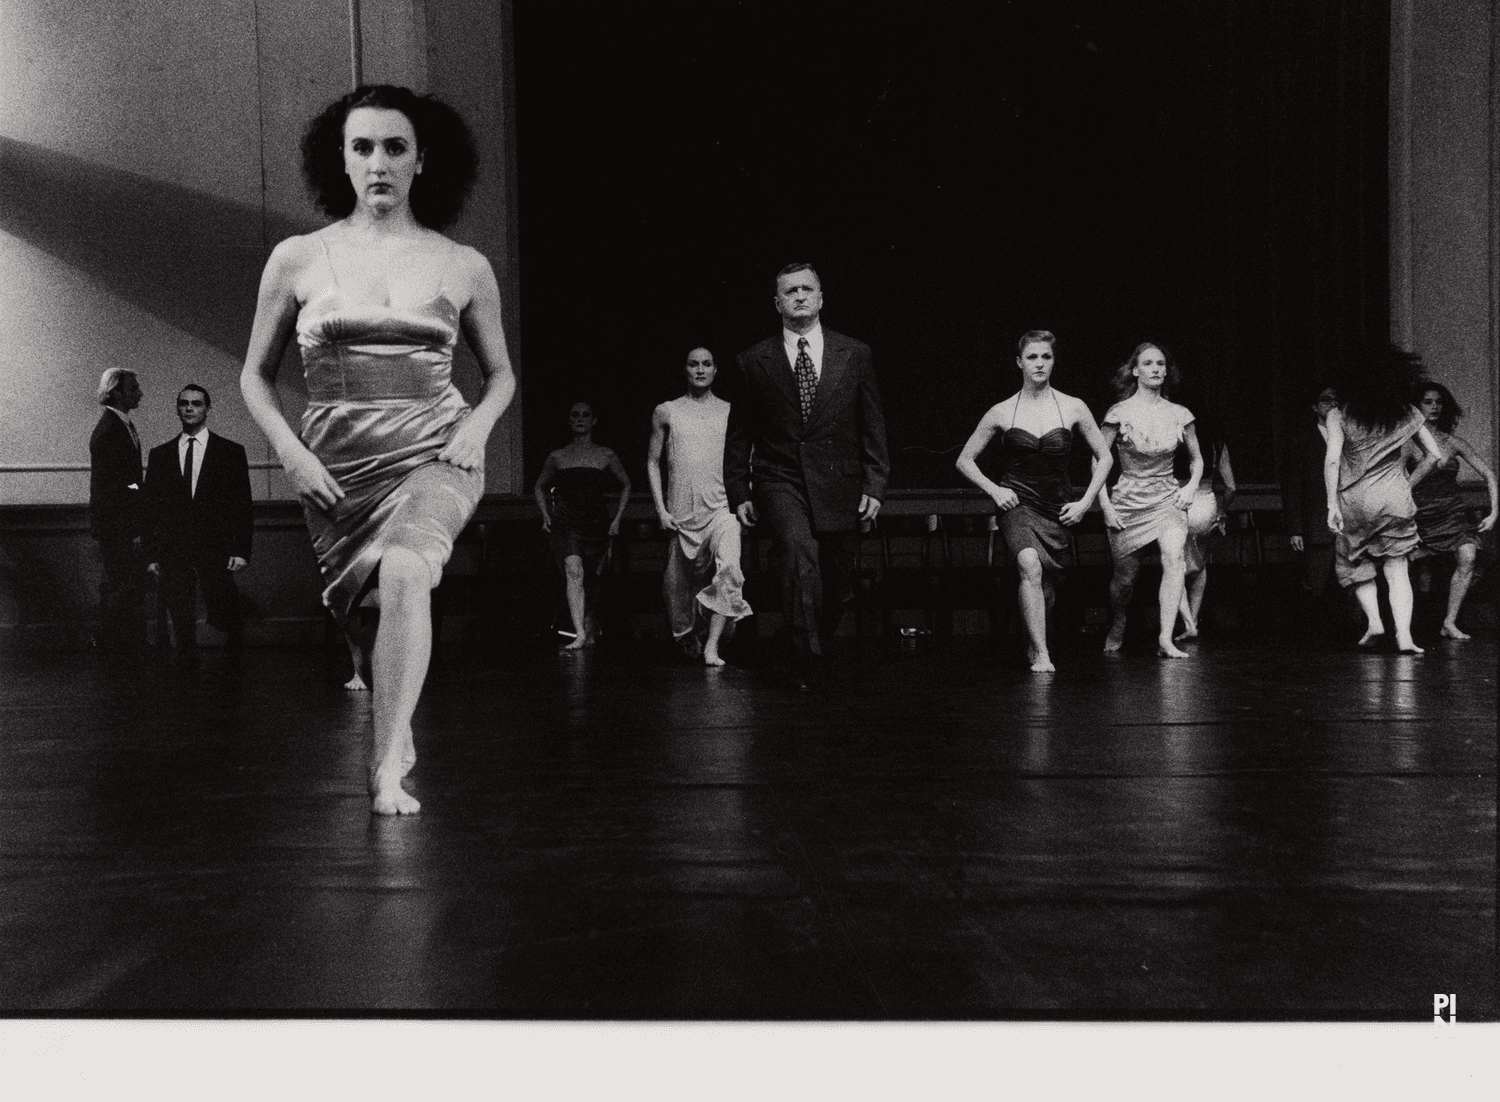 “Kontakthof” by Pina Bausch with Tanztheater Wuppertal at Schauspielhaus Wuppertal (Germany), Feb. 21, 2000